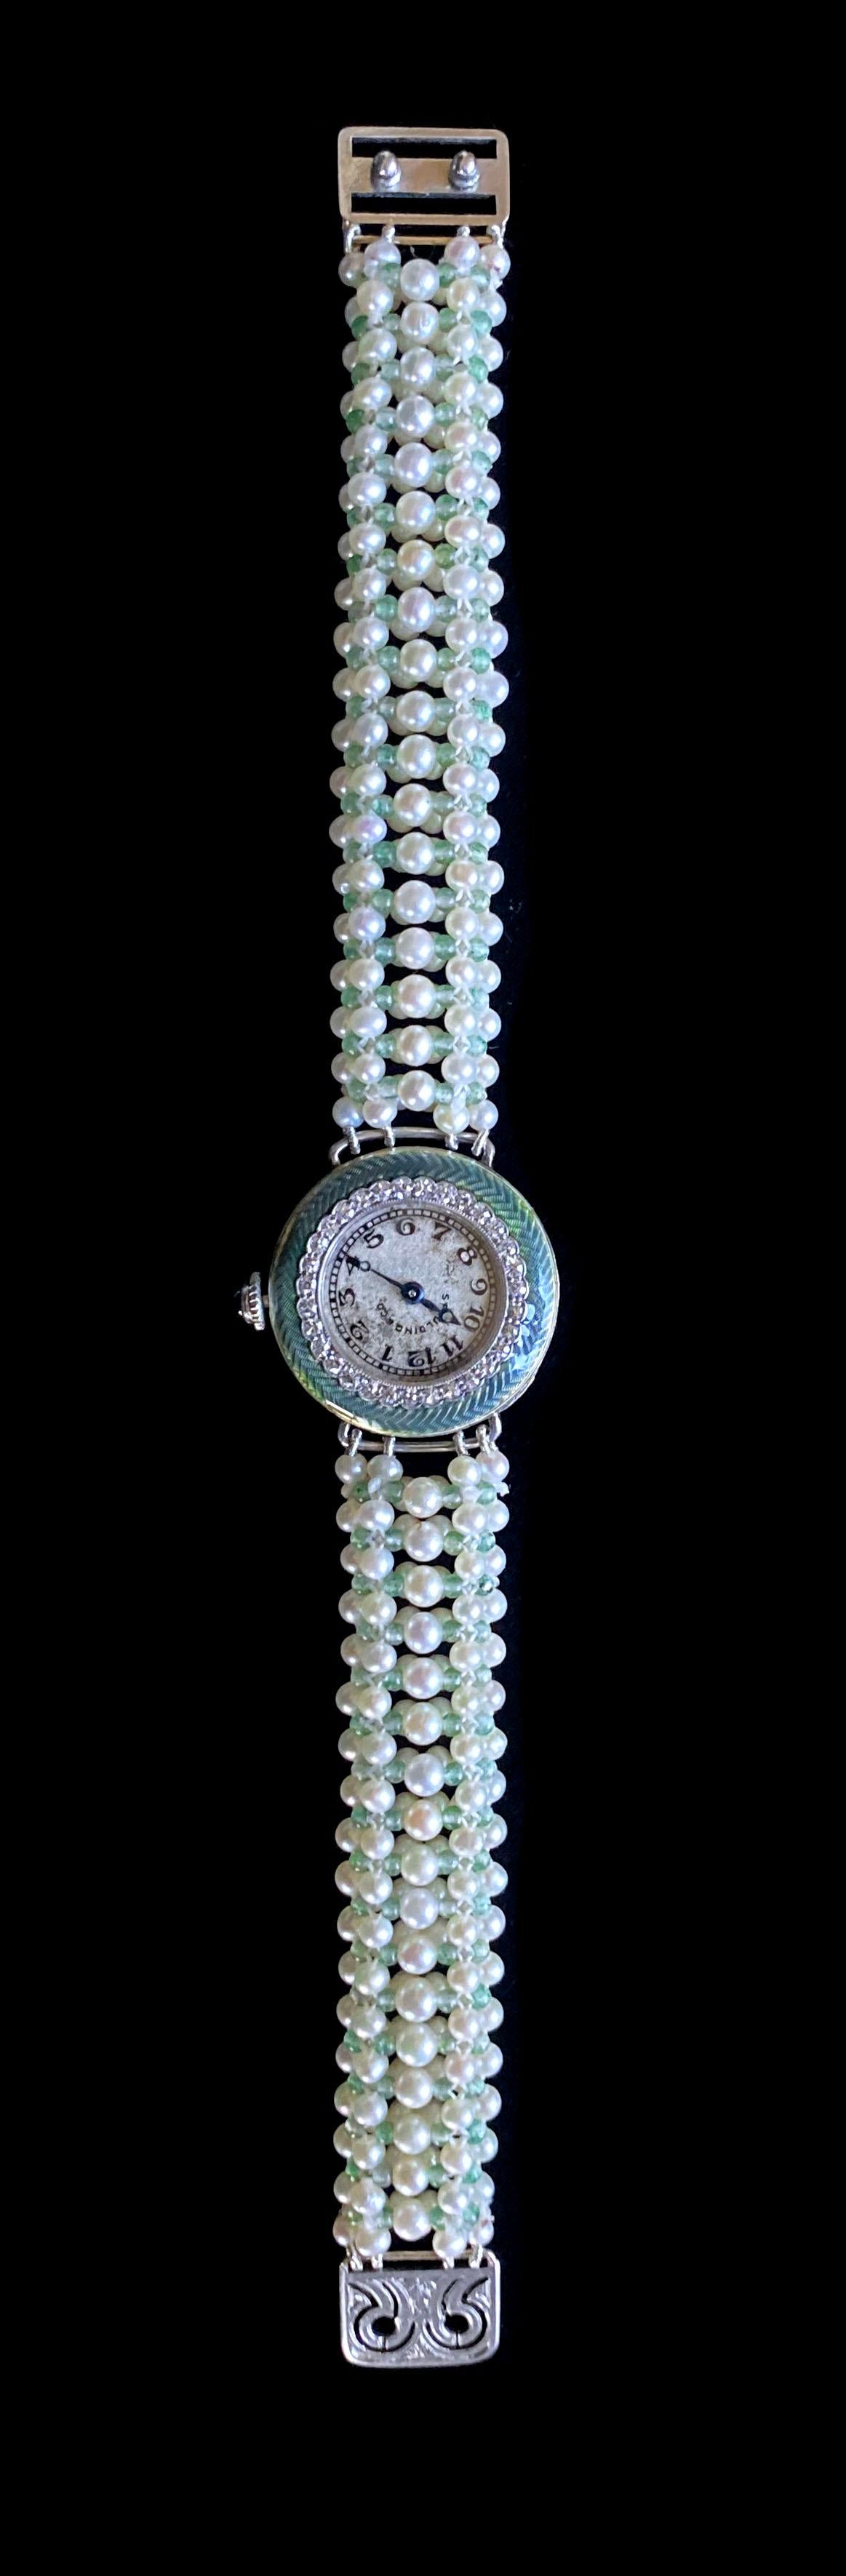 Magnifique montre unique de Marina J. Une ancienne montre Edwardian Spaulding & Co incrustée de diamants avec des détails en émail vert a été retravaillée pour en faire une superbe pièce moderne. La montre est entièrement en platine blanc avec un